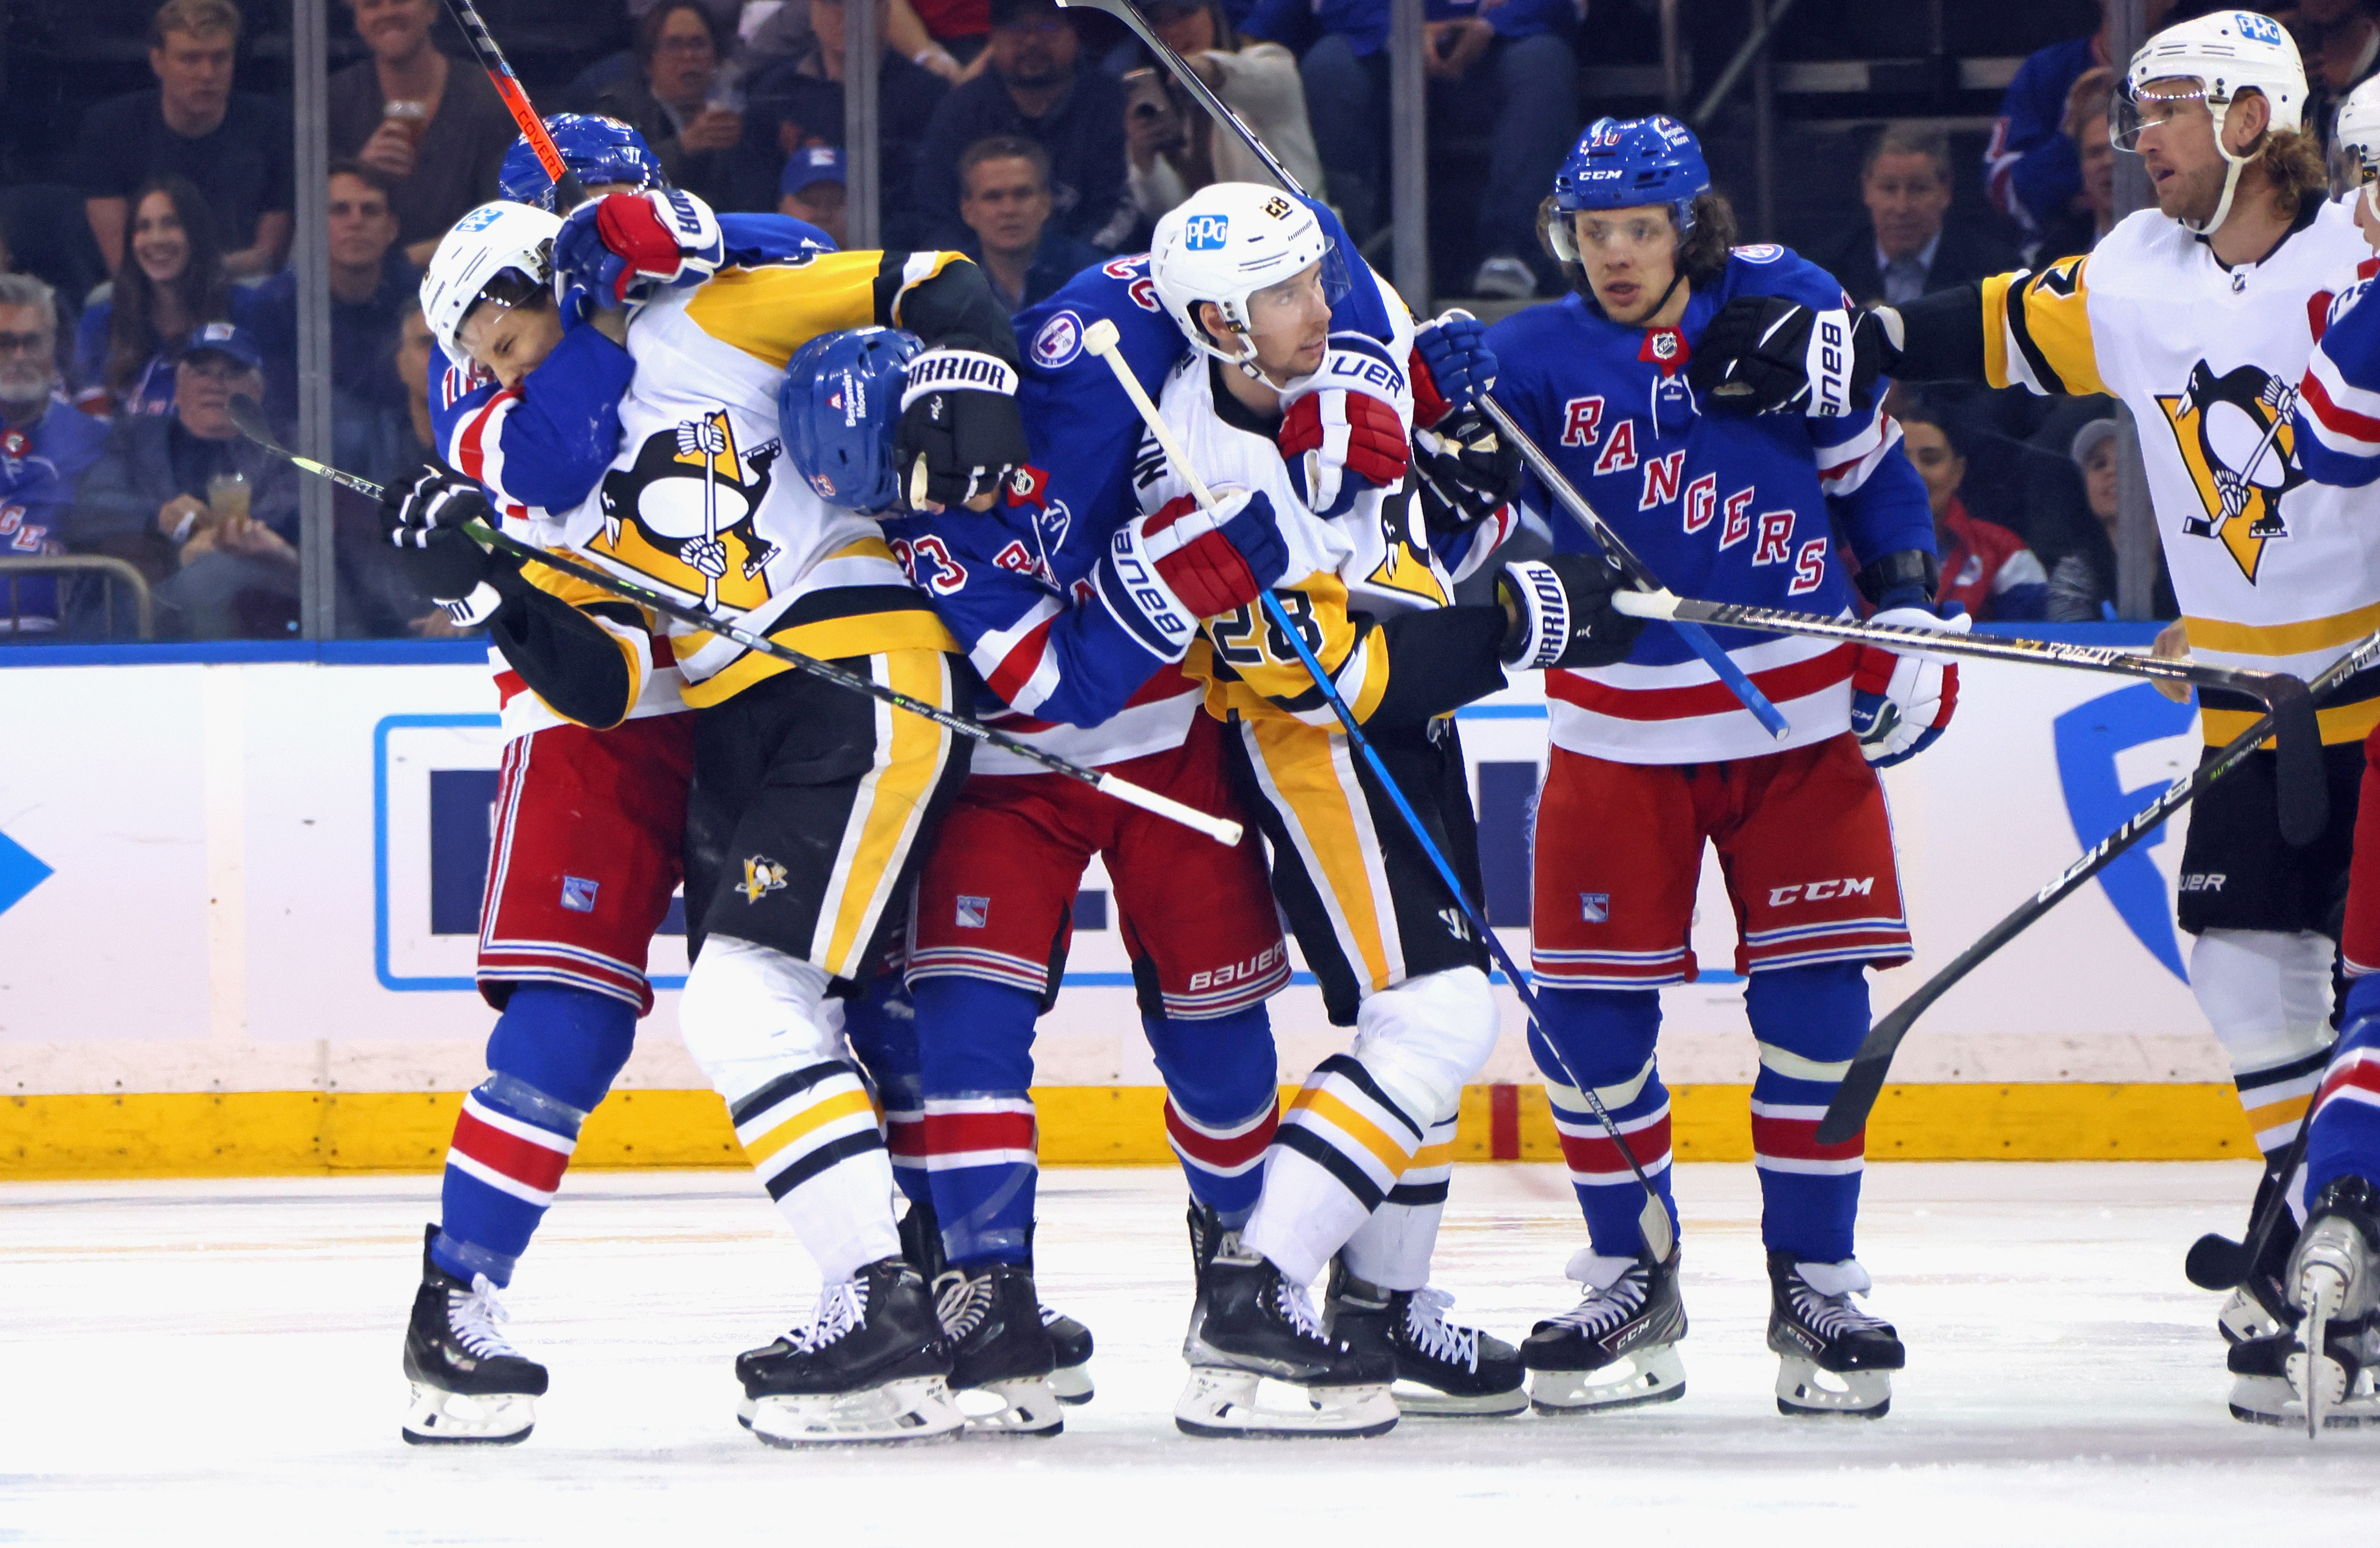 Pittsburgh Penguins v New York Rangers - Game Two